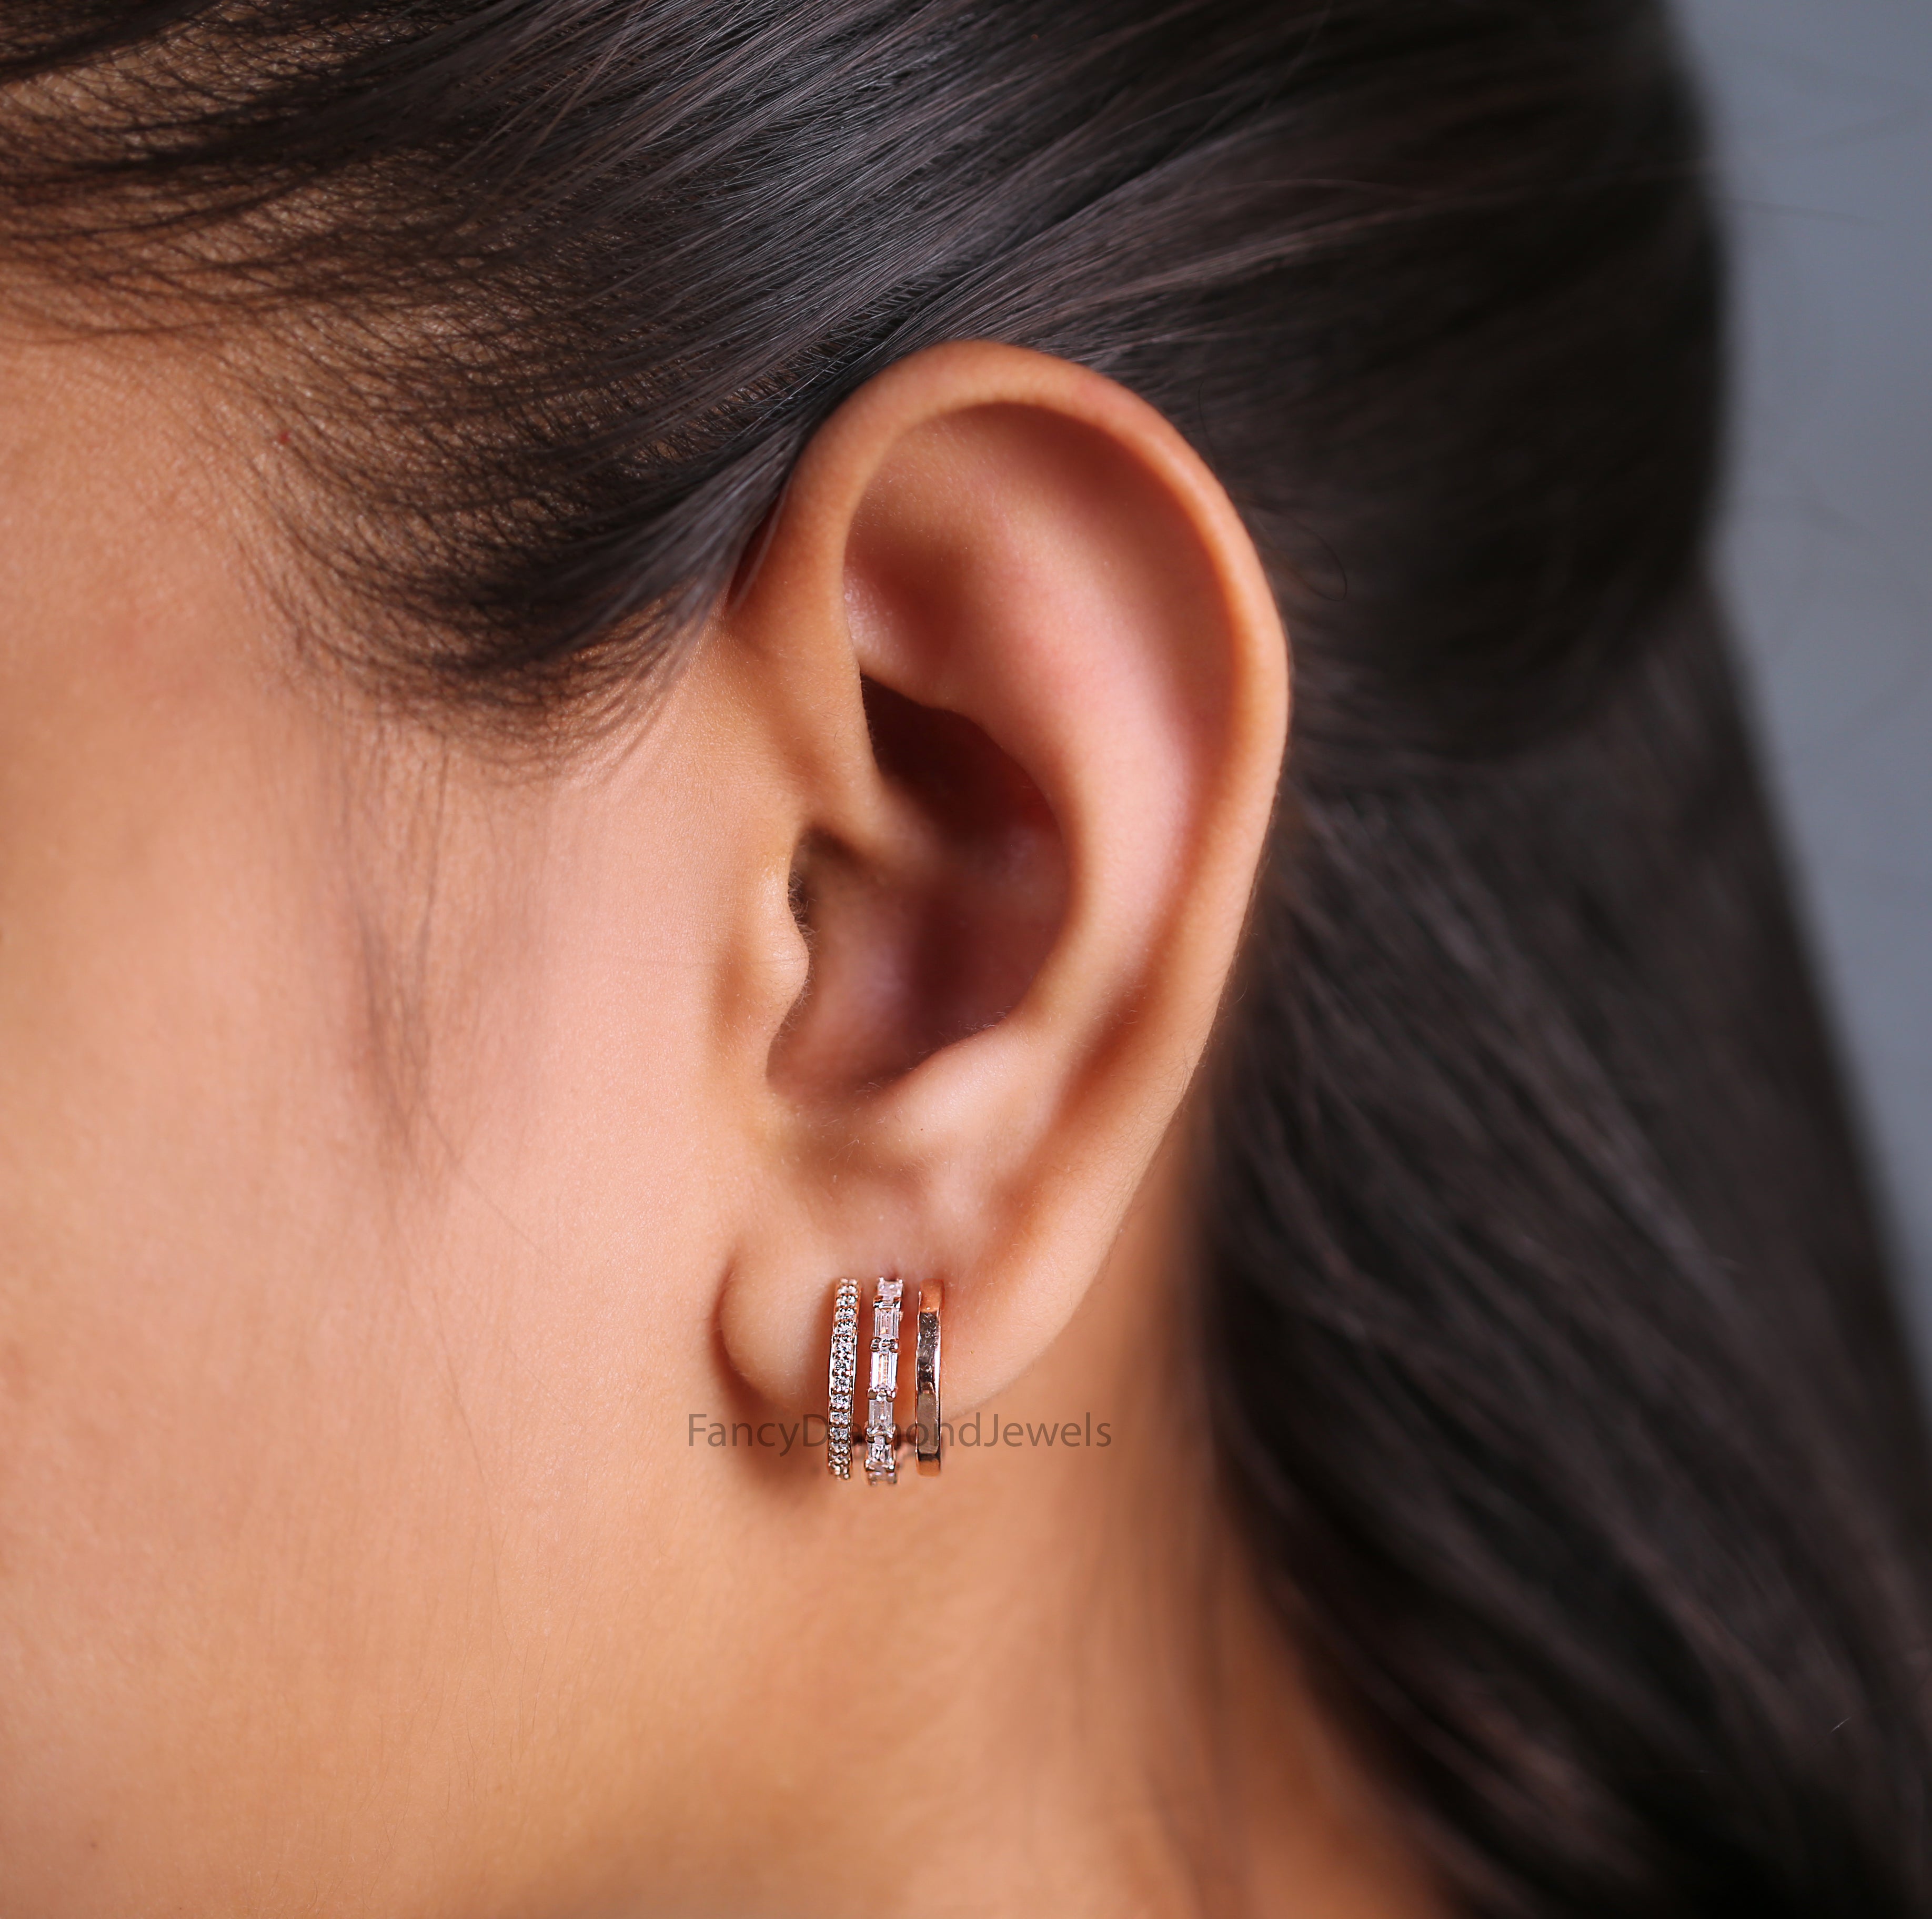 Baguette White Diamond Earring, Round Shape Diamond Earring, Prong Earring, Engagement Earring, Earlobe Earrings, Earrings Jewelry, KD1116